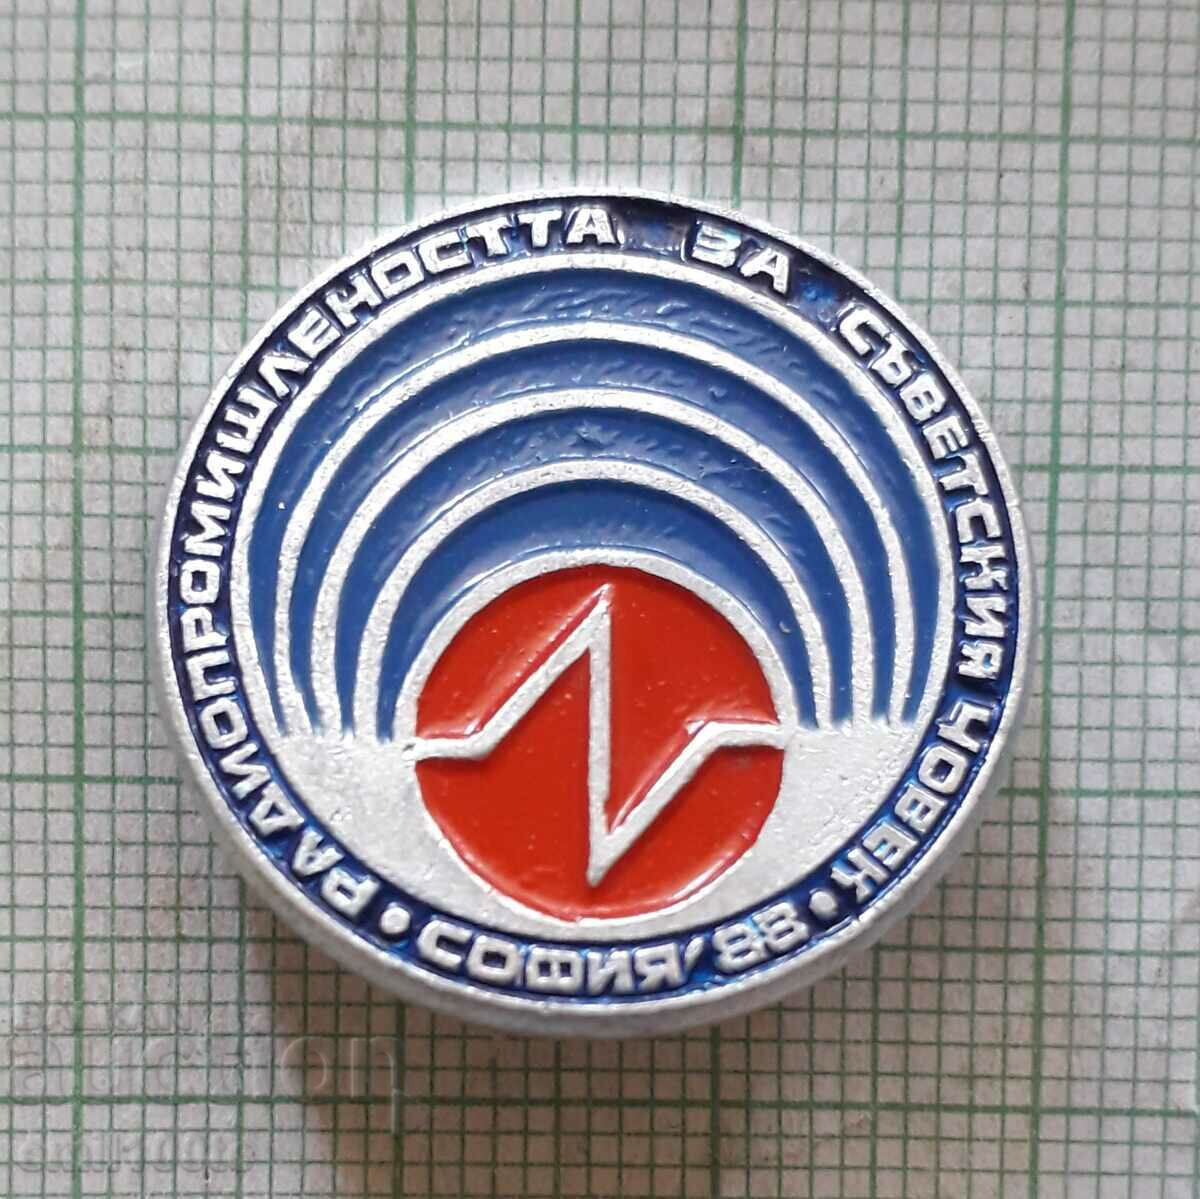 Σήμα - Ραδιοφωνική βιομηχανία για τον Σοβιετικό άνδρα Sofia 88